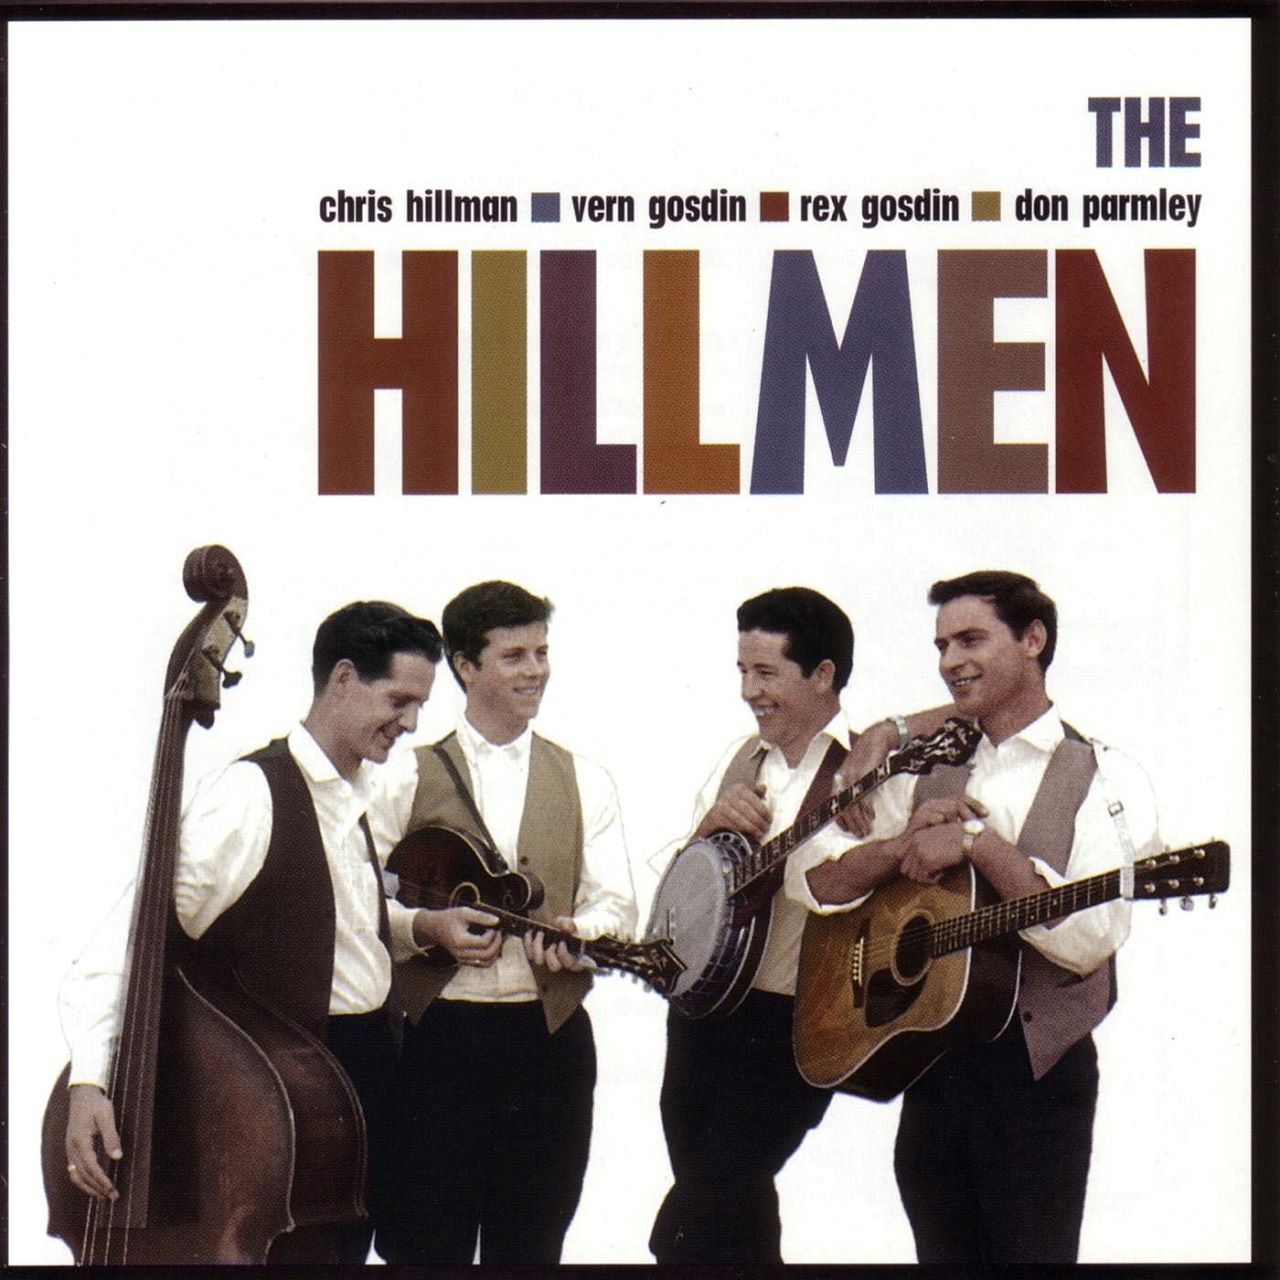 Hillmen - The Hillmen cover album